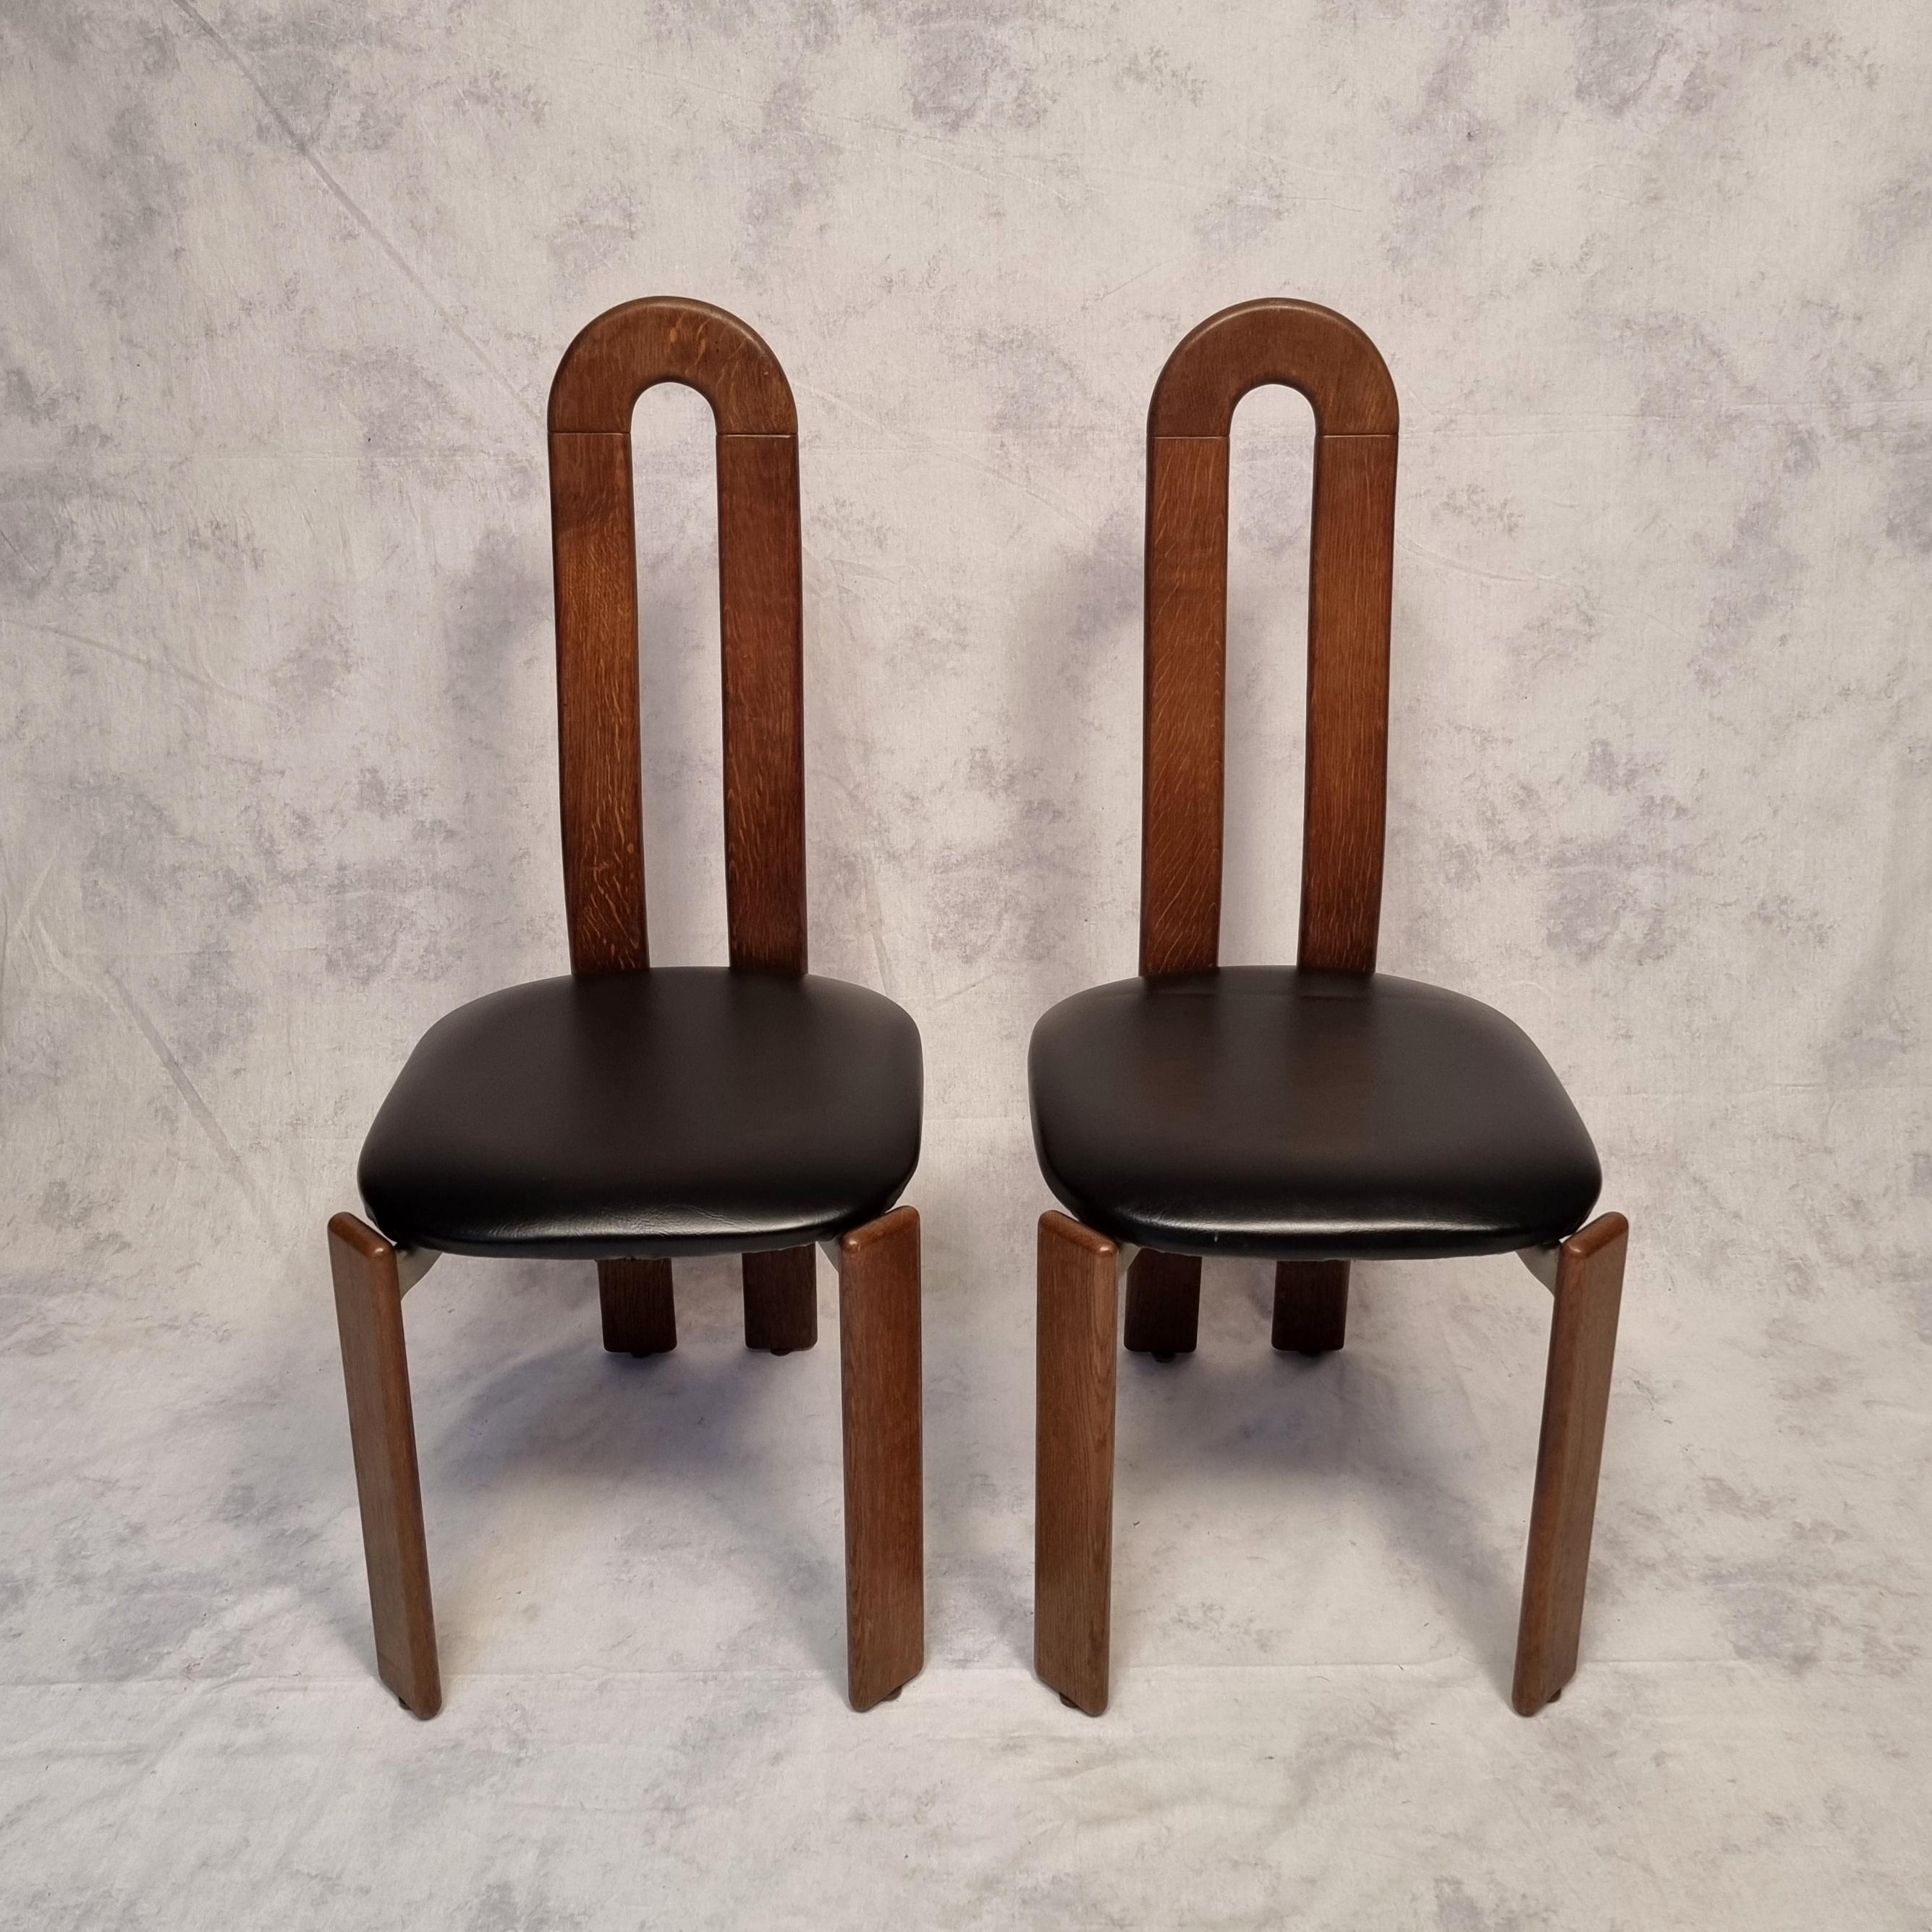 Bruno Rey Chairs for Dietiker by Atelier Stuhl Aus Stein Am Rhein, Oak, Ca 1970 For Sale 2